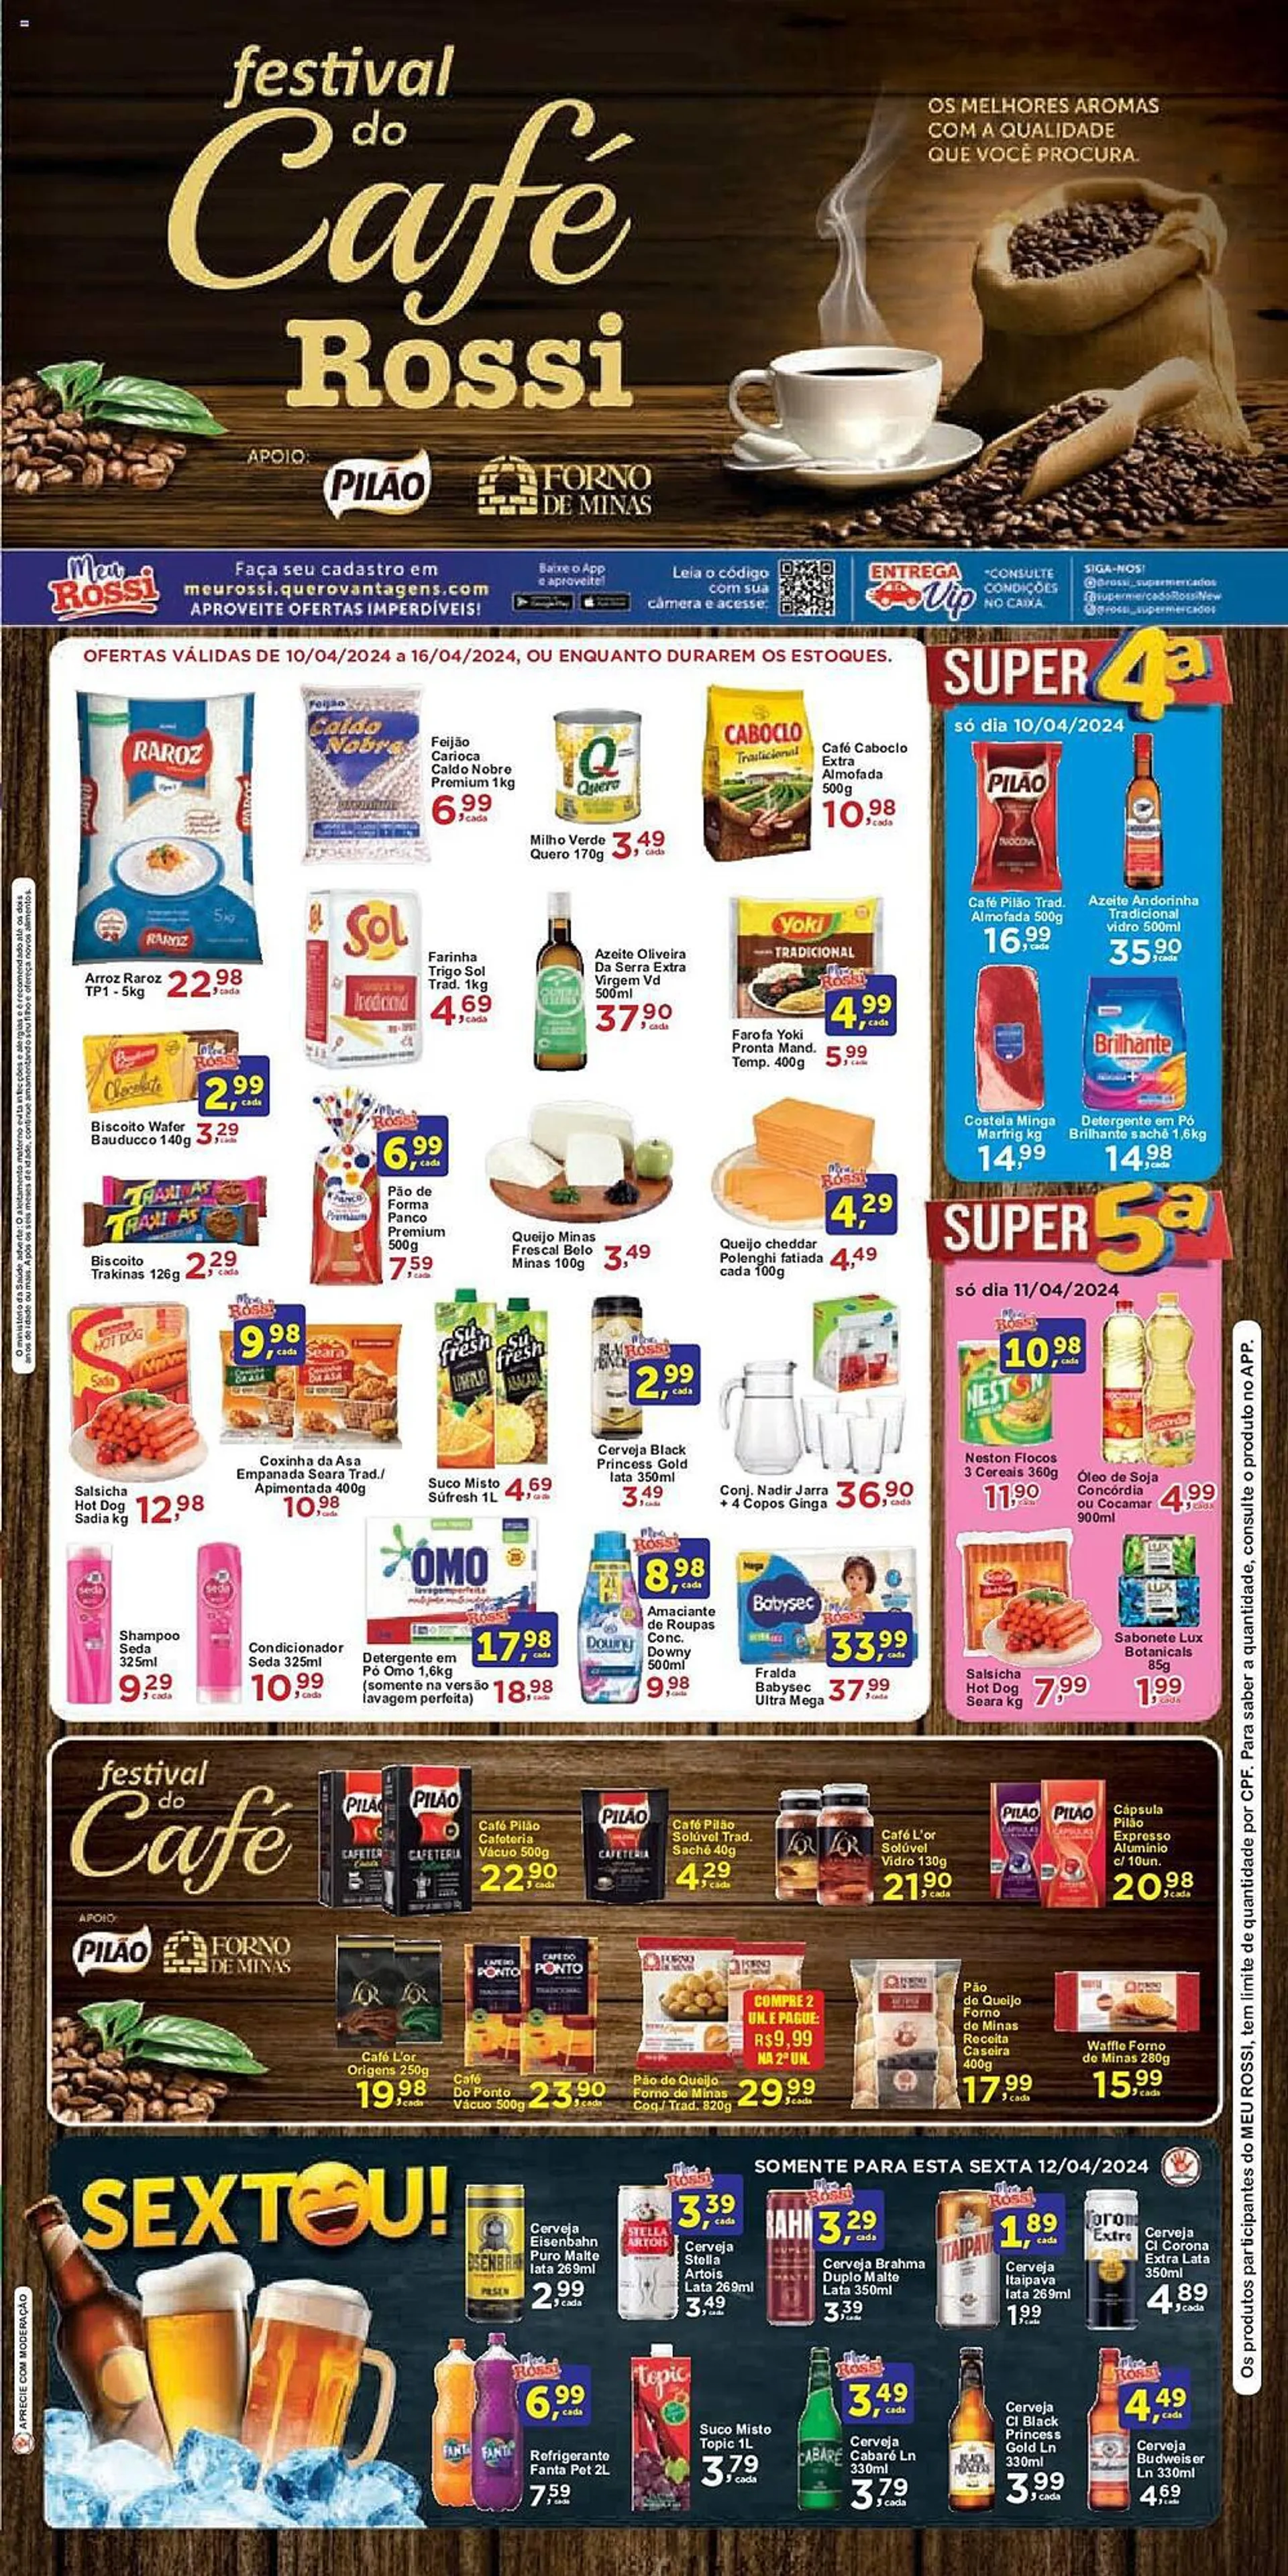 Encarte de Catálogo Rossi Supermercado 10 de abril até 16 de abril 2024 - Pagina 1